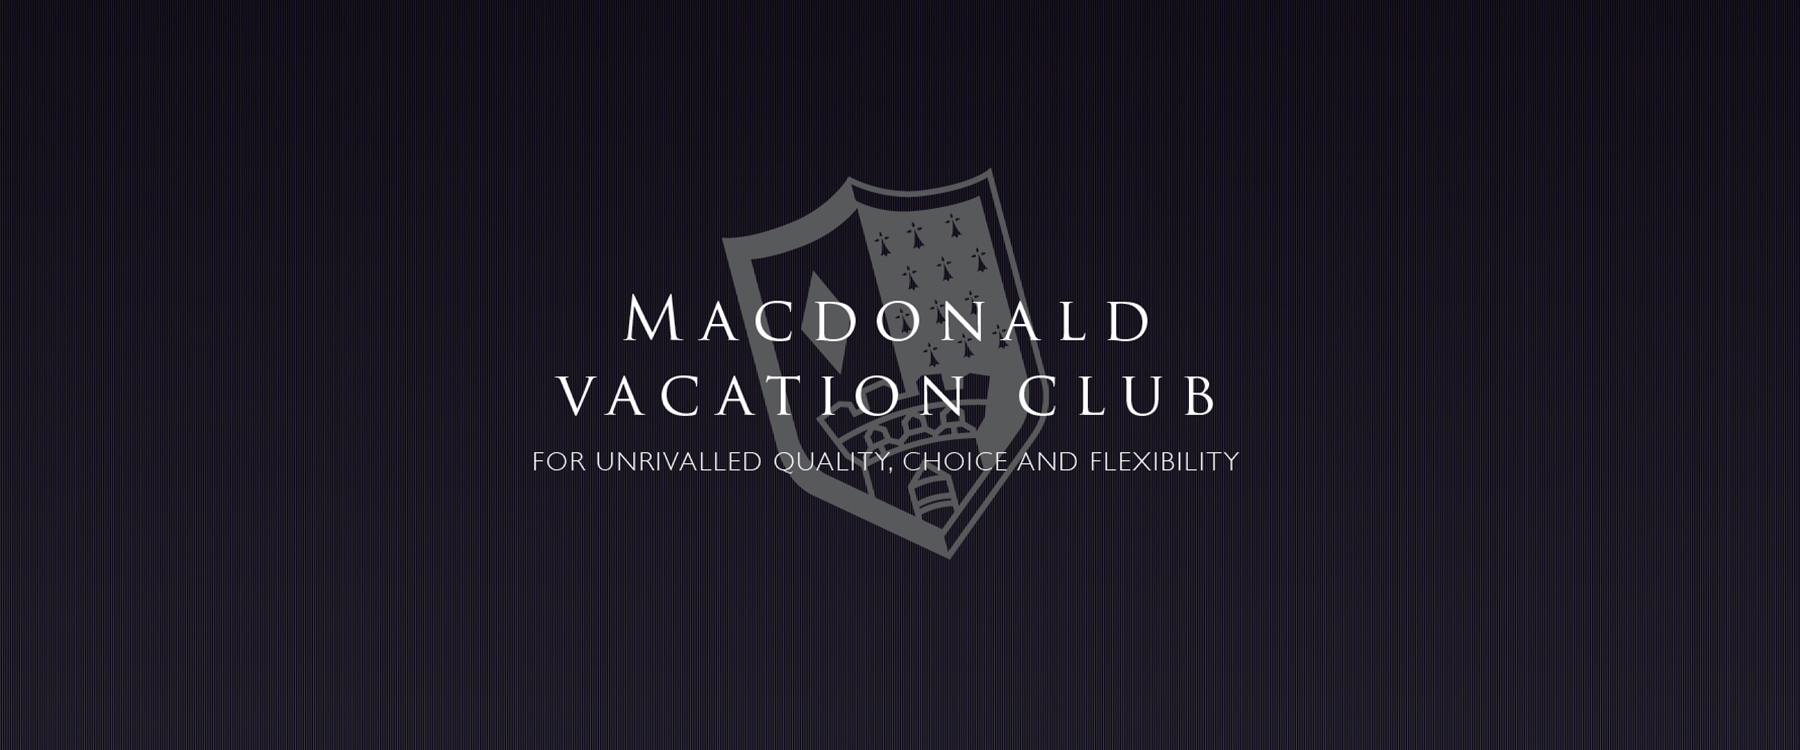 macdonald campaign logo